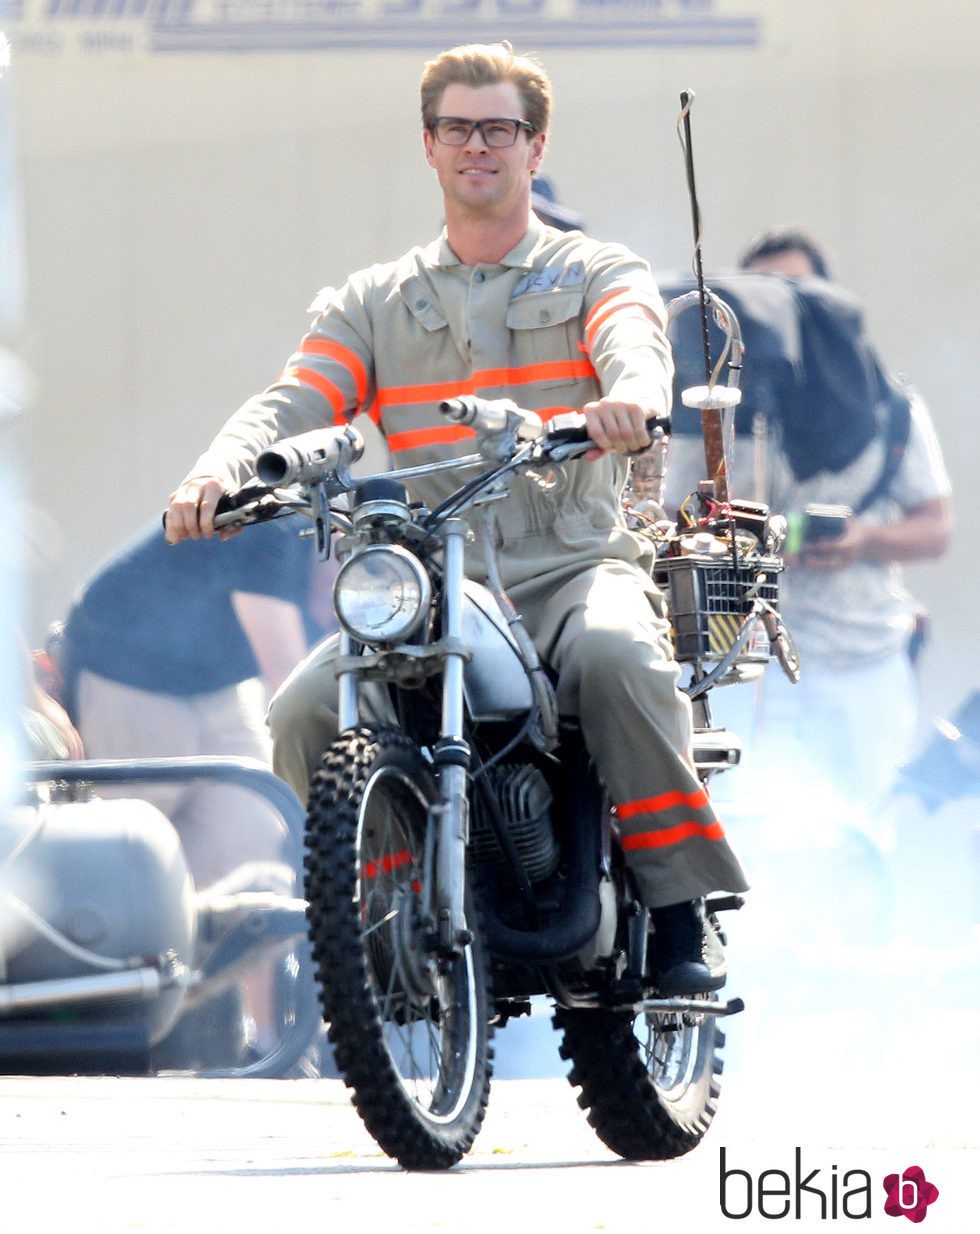 Chris Hemsworth en el rodaje de 'Cazafantasmas' en Boston